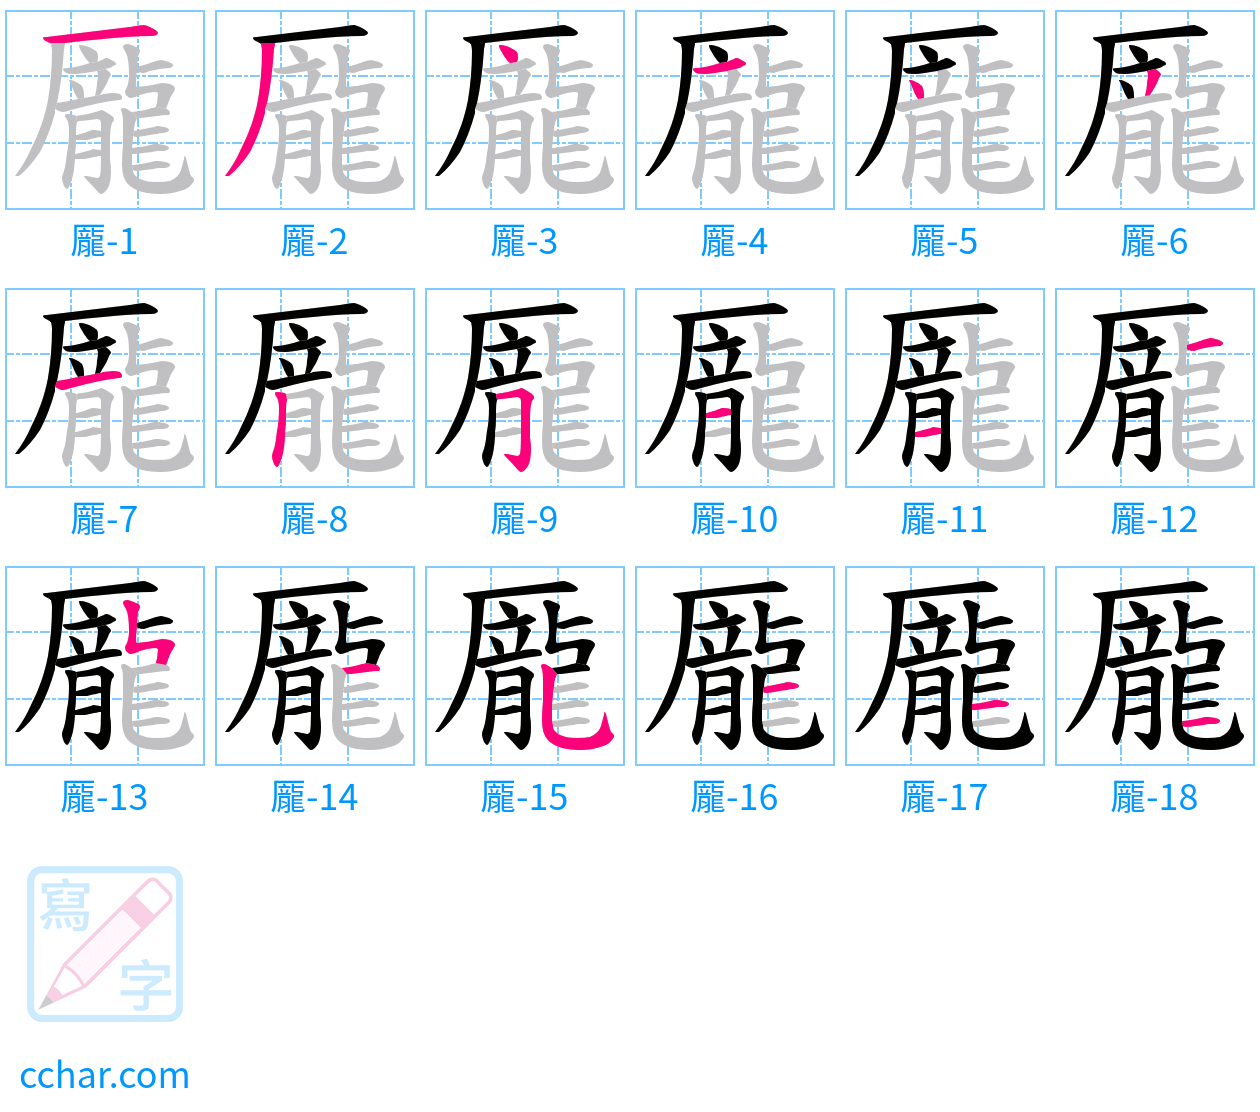 龎 stroke order step-by-step diagram